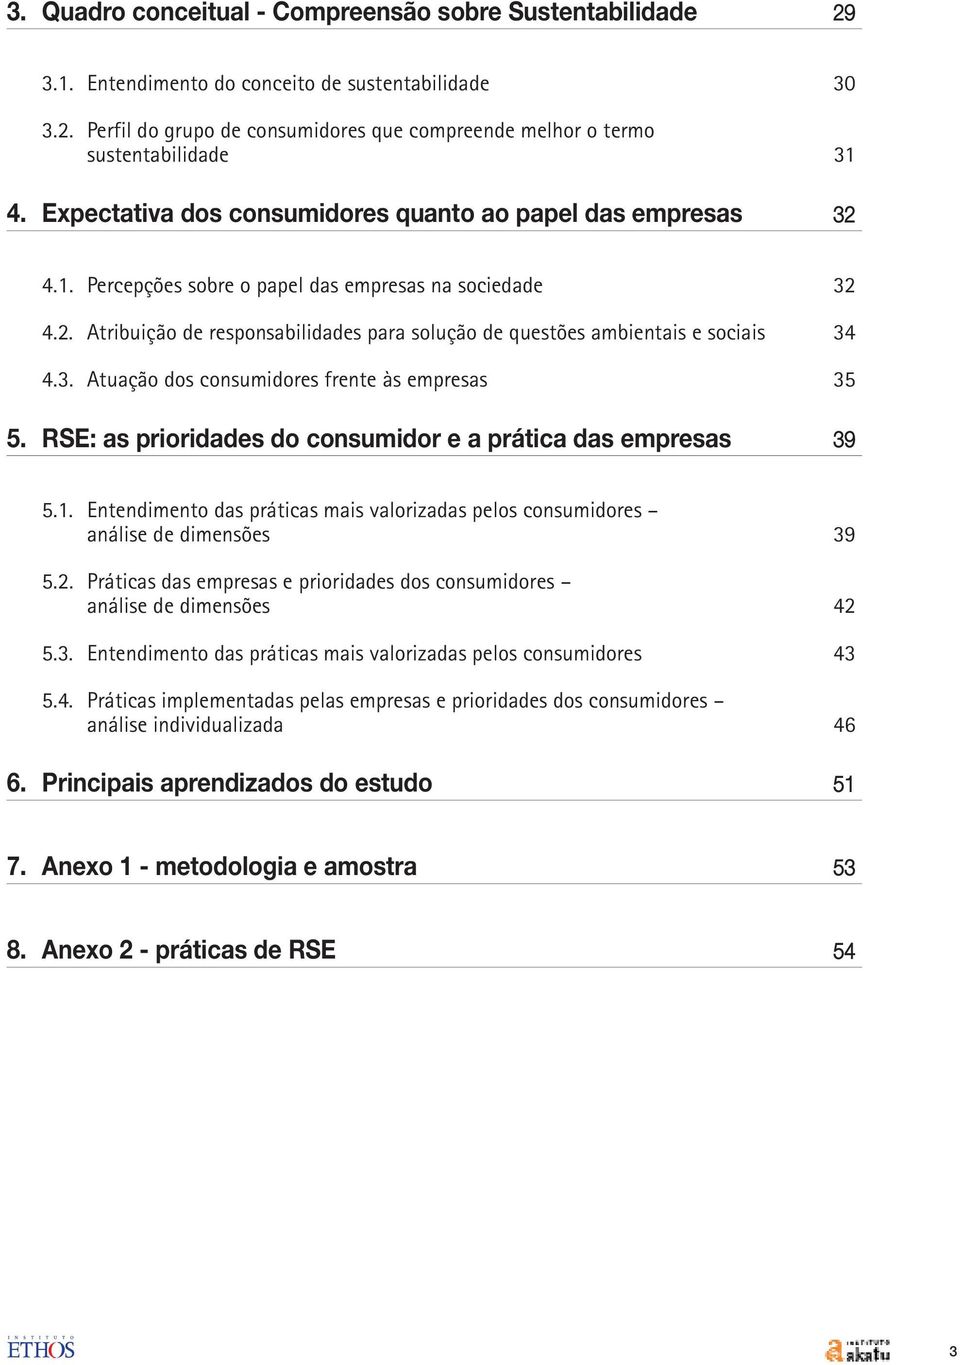 3. Atuação dos consumidores frente às empresas 35 5. RSE: as prioridades do consumidor e a prática das empresas 39 5.1.